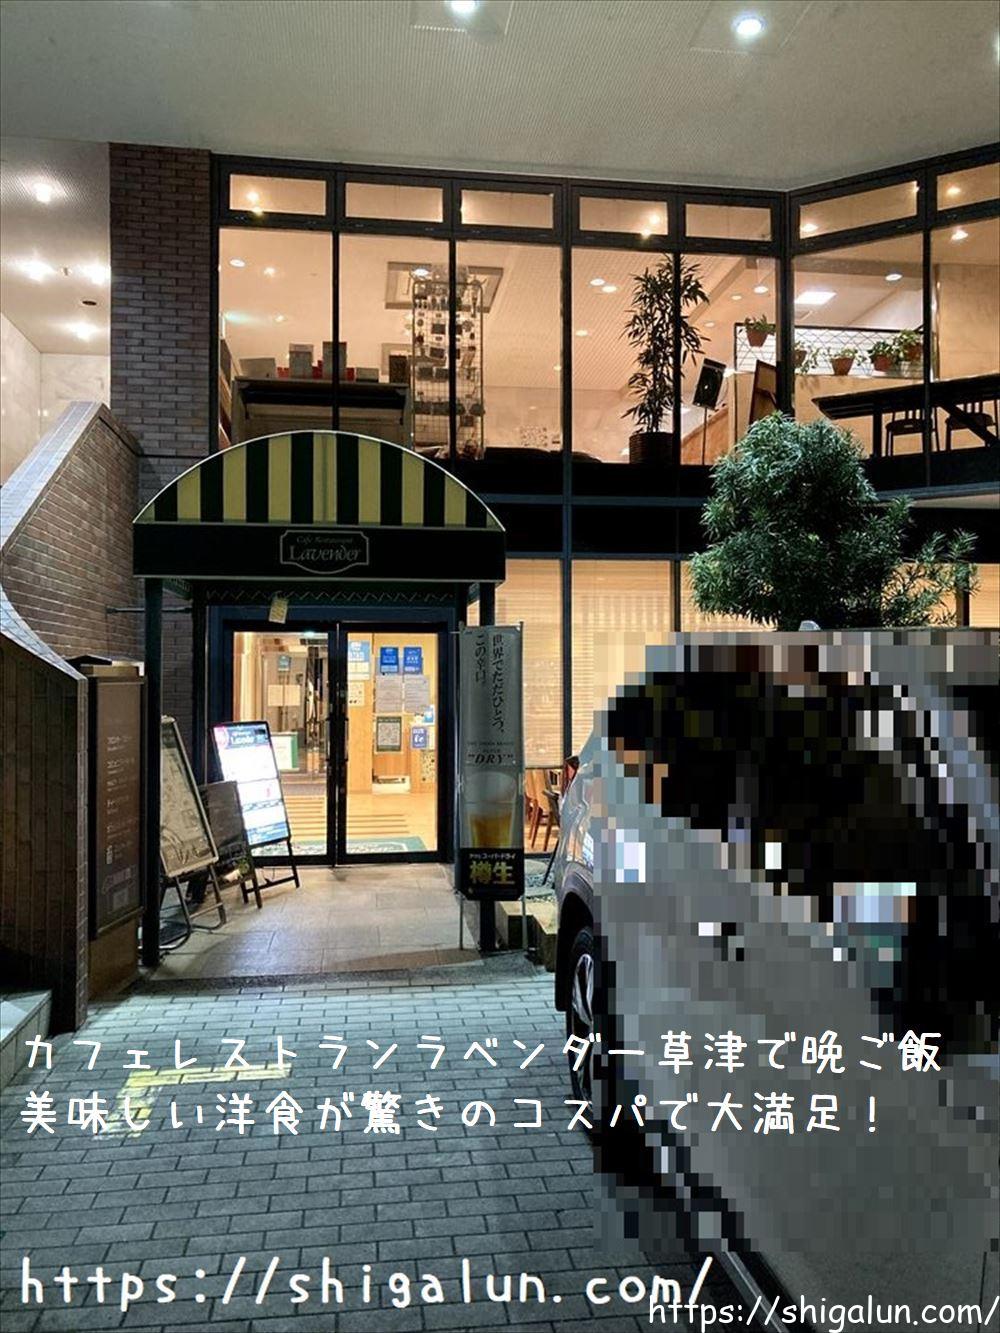 カフェレストランラベンダーへご飯♪草津駅近くのコスパ良い穴場レストラン